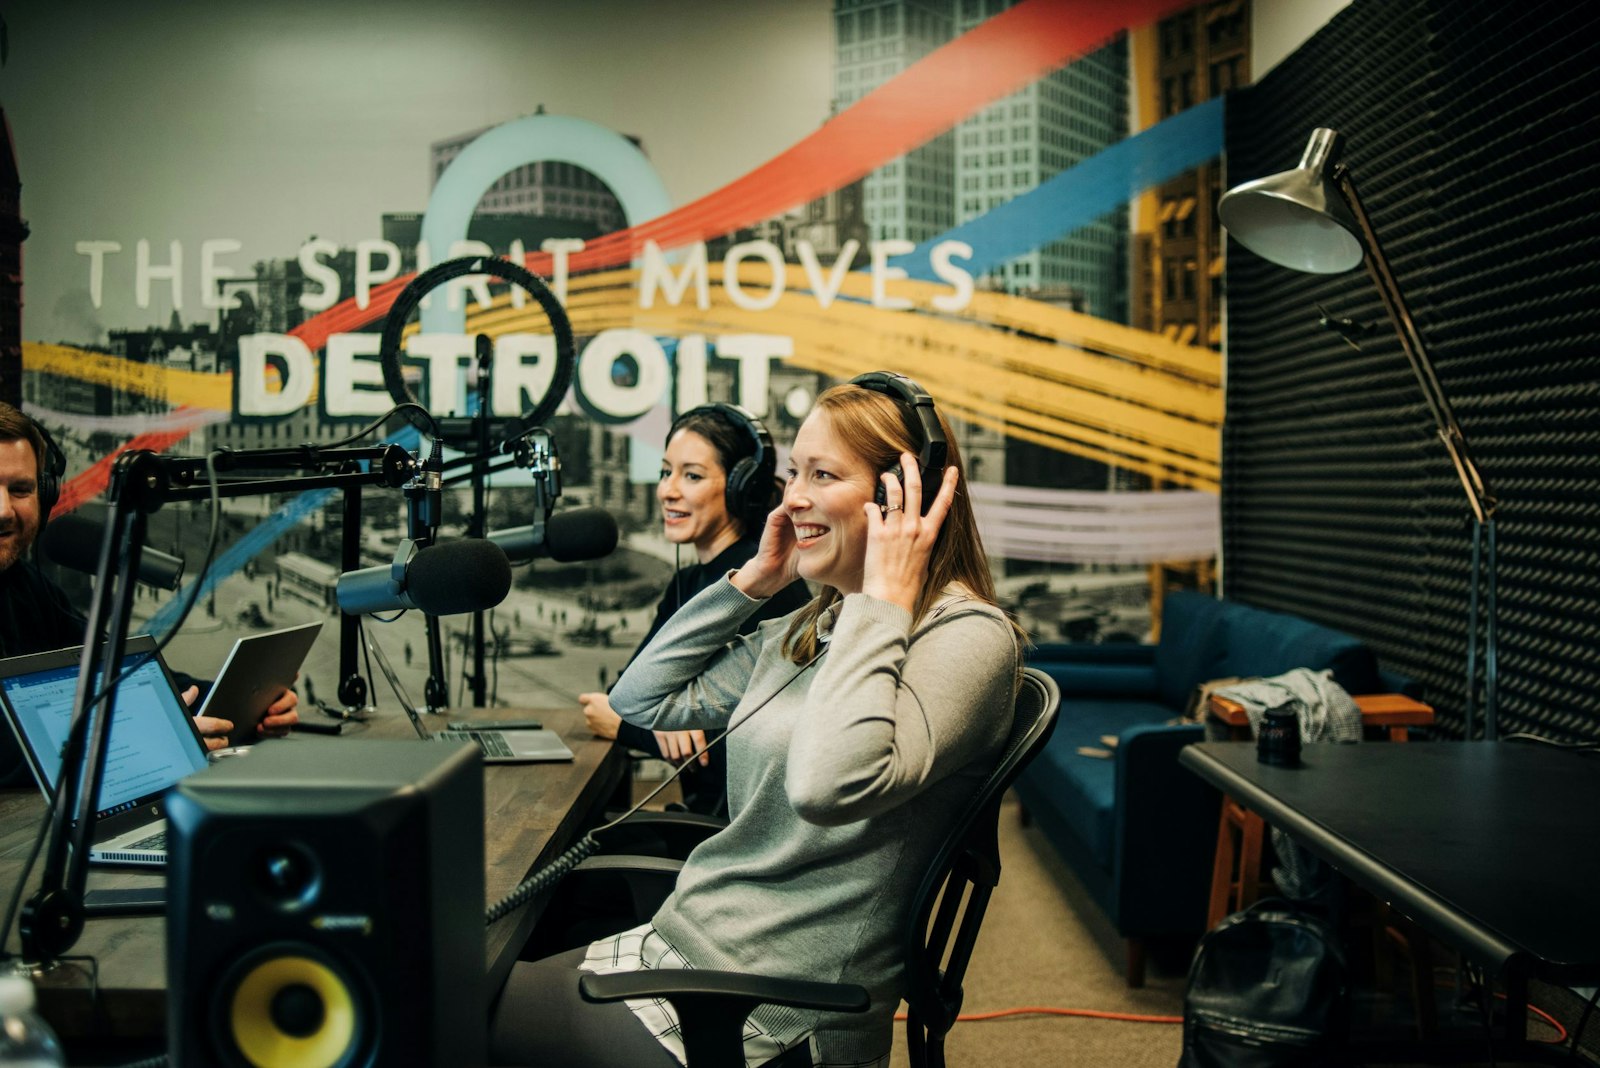 Beth Spizarny graba un episodio de "Encounter, Grow, Witness", un podcast que ofrece consejos, asesoramiento y formación teológica para catequistas, líderes del ministerio laico y voluntarios de la parroquia. "Encounter, Grow, Witness" es uno de los cinco podcasts originales producidos por la Arquidiócesis de Detroit.